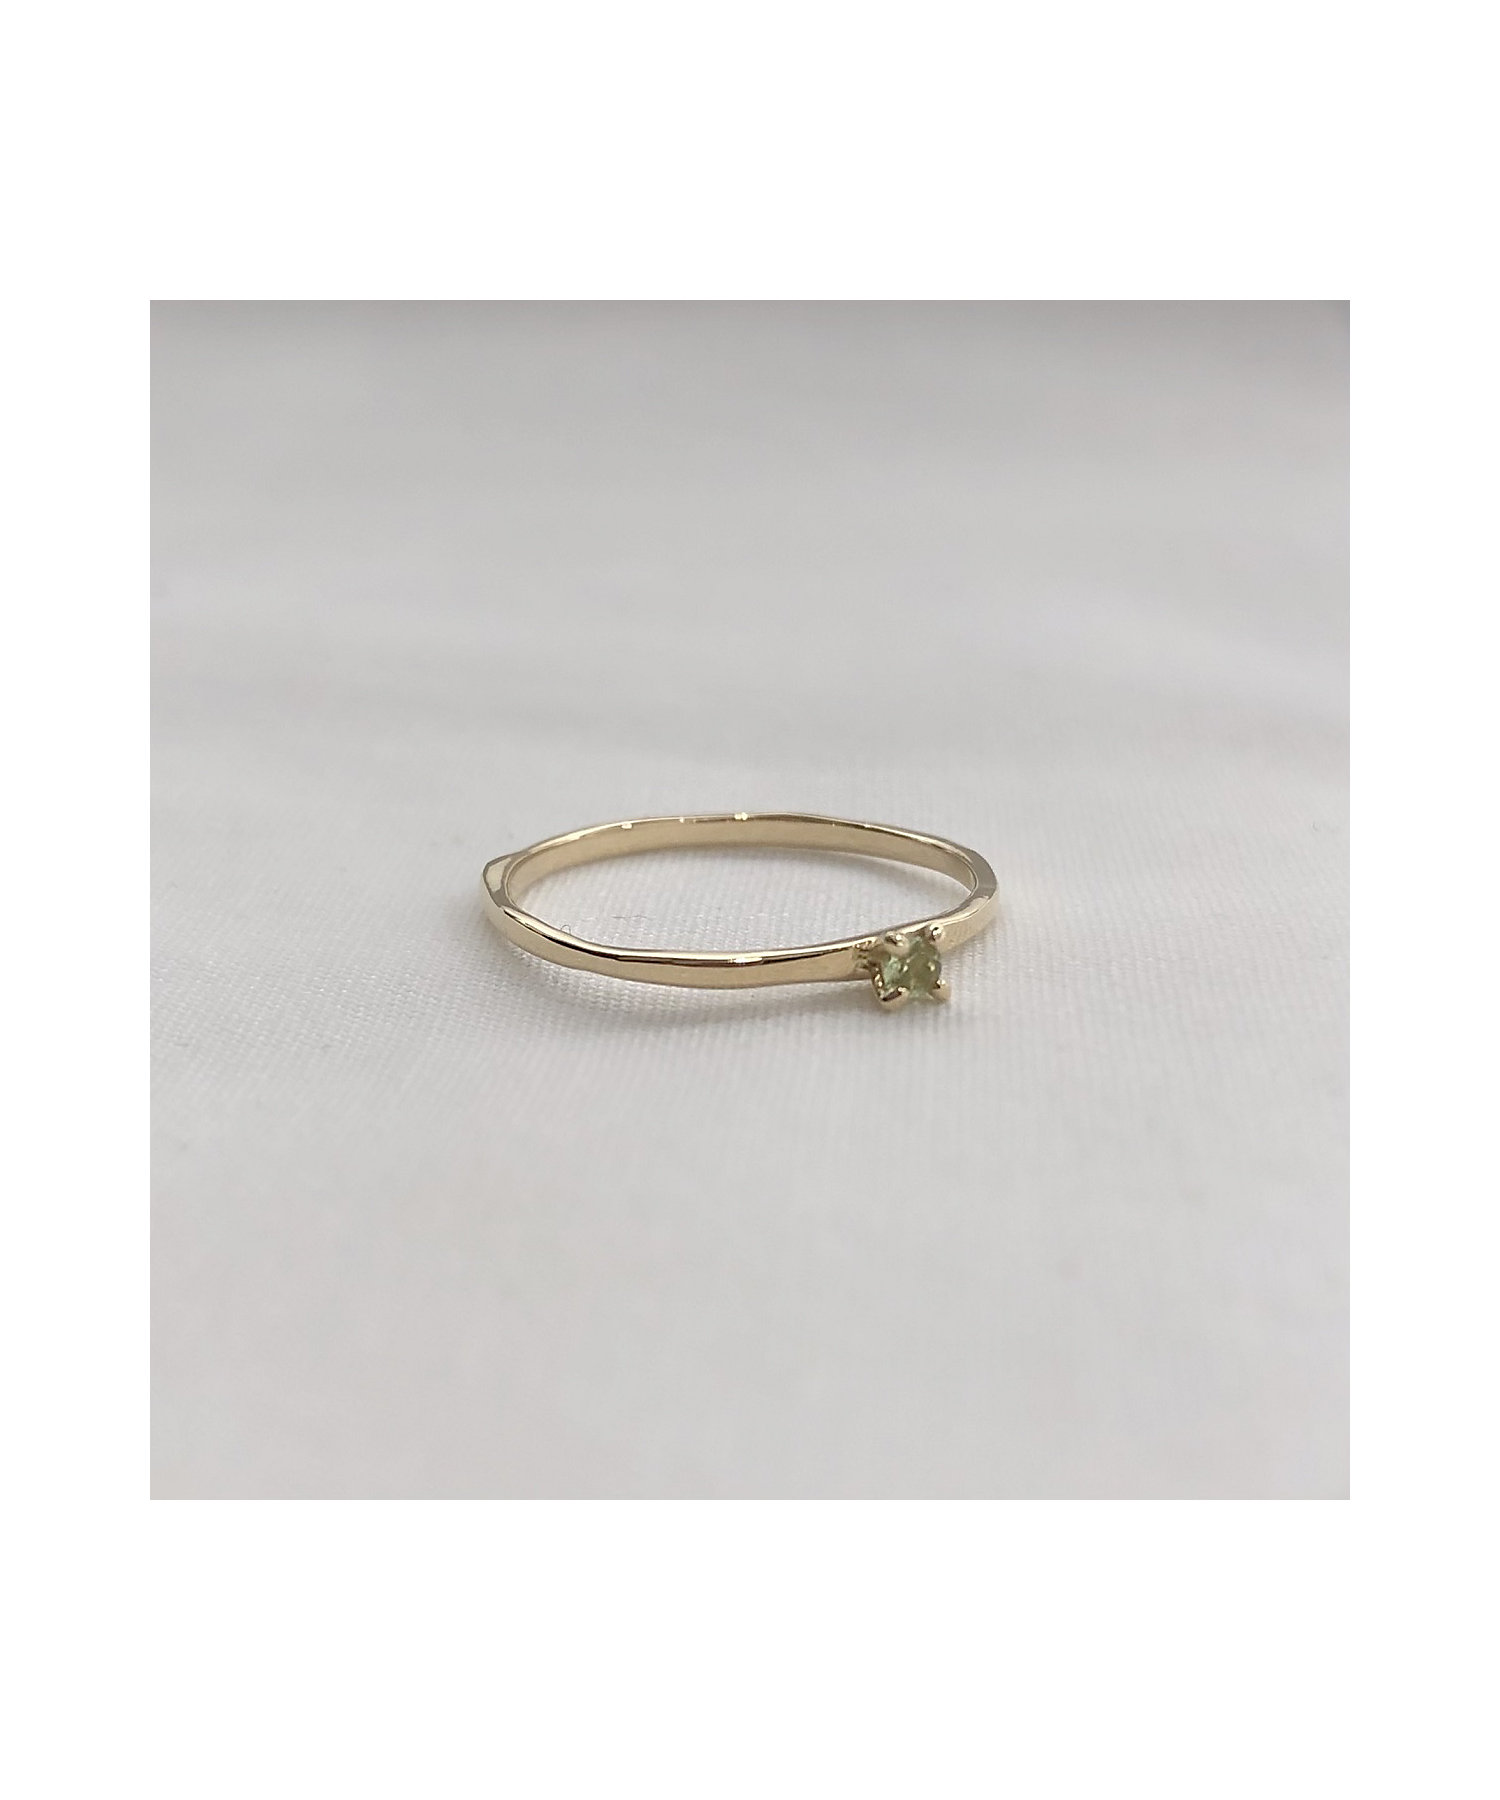 愛用 プラチナ900 指輪 ペリドット 8月の誕生石 5石 ラッキーアイテム馬蹄 指輪 リングサイズ:21.5号 - raffles.mn